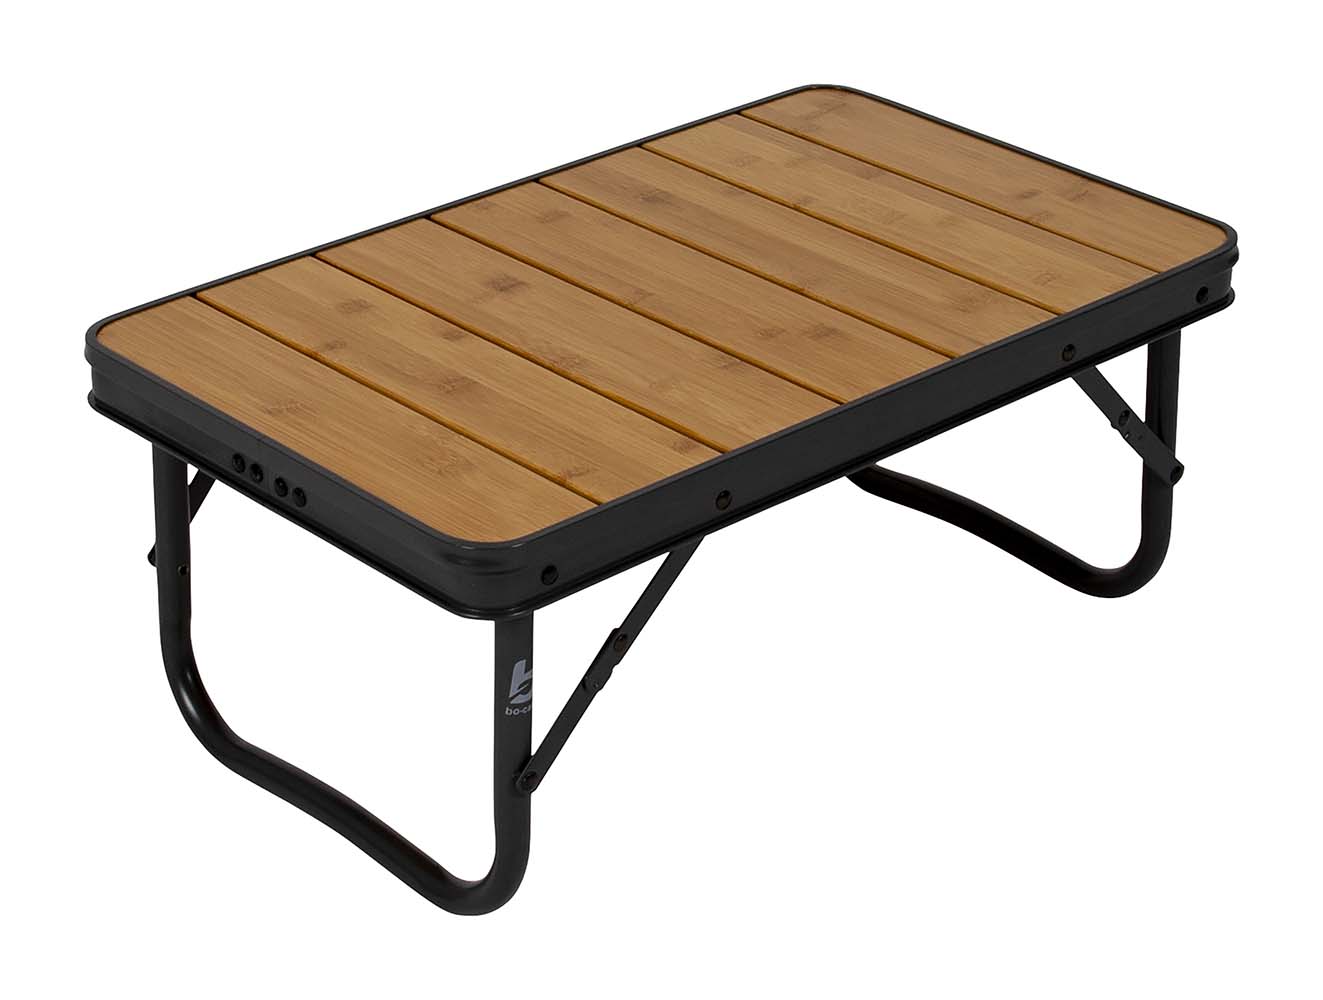 1404662 Een extra lage en sfeervolle klaptafel uit in Urban Outdoor collectie. Deze klaptafel is erg compact en gemakkelijk inklapbaar door de inklapbare poten. Deze watervaste tafel beschikt over een aluminium frame met een bamboe tafelblad.